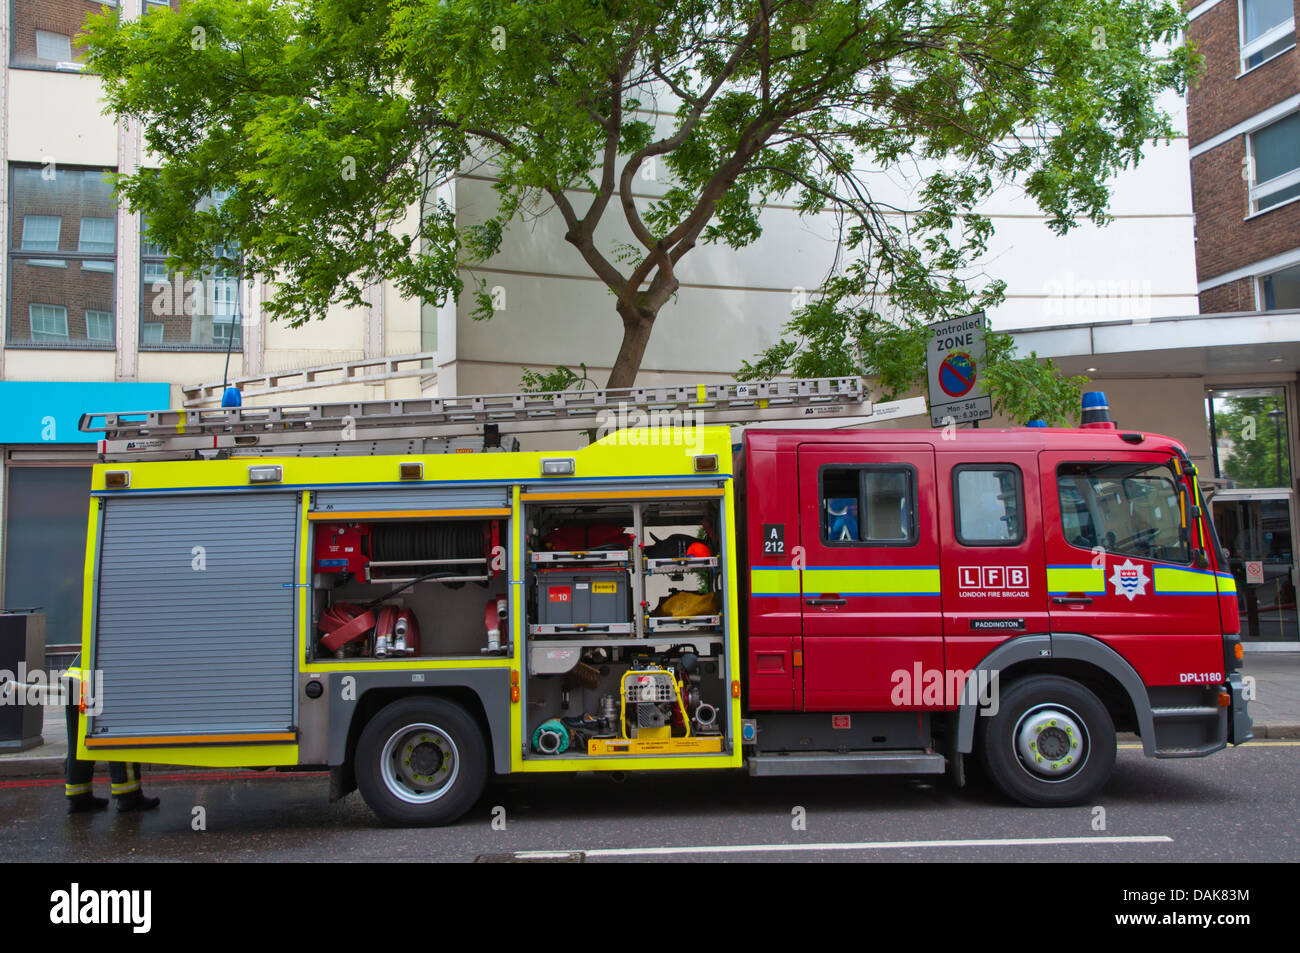 Feuerwehr bei der Arbeit Stadtteil Marylebone London England Großbritannien UK Europe Stockfoto